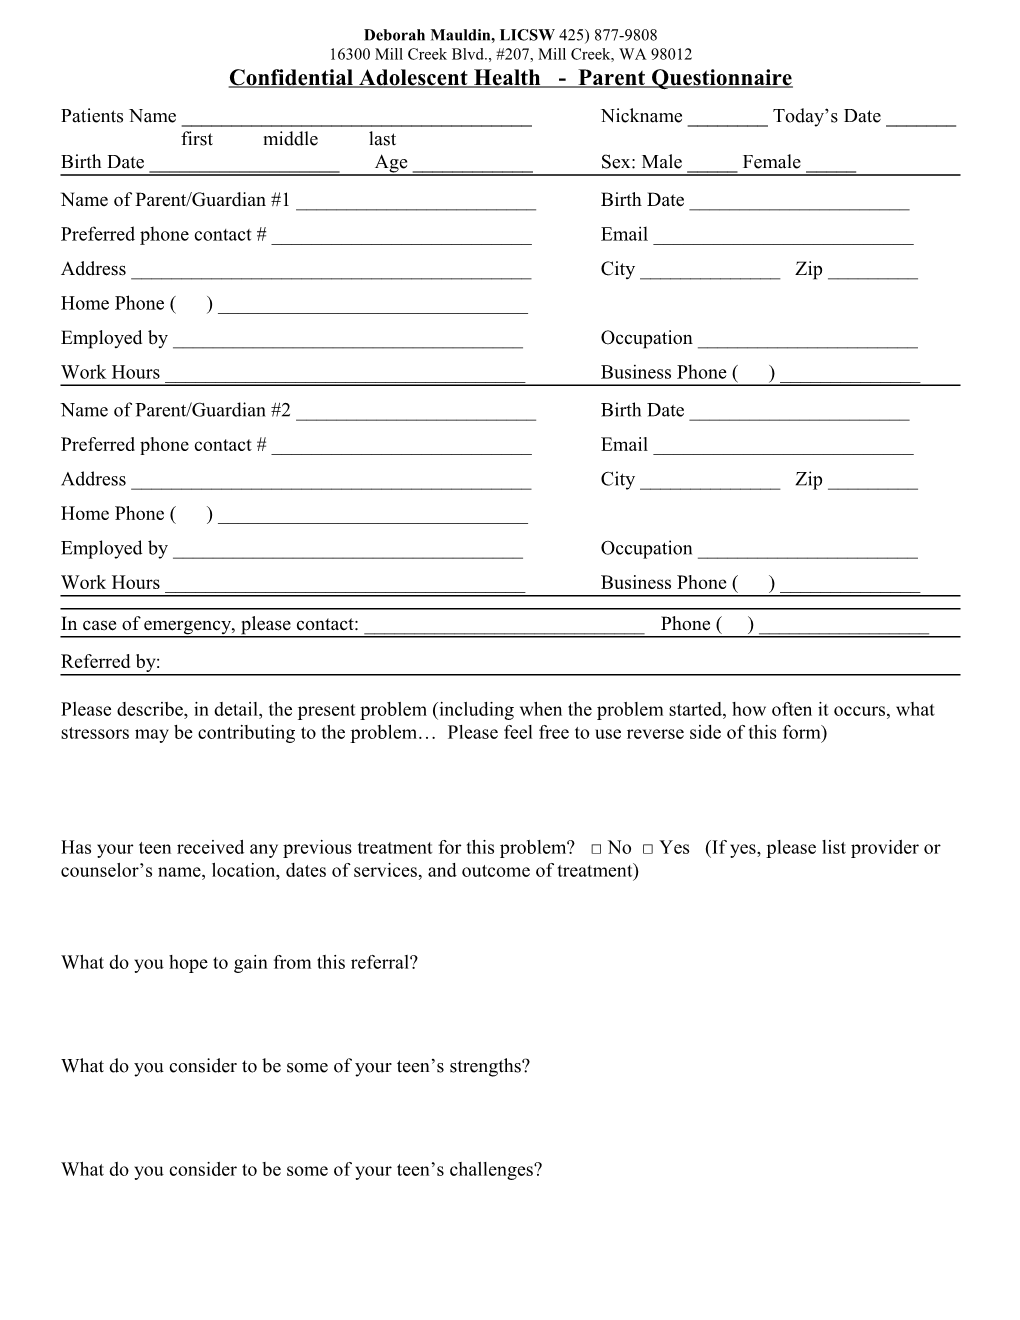 Confidential Adolescent Health - Parent Questionnaire